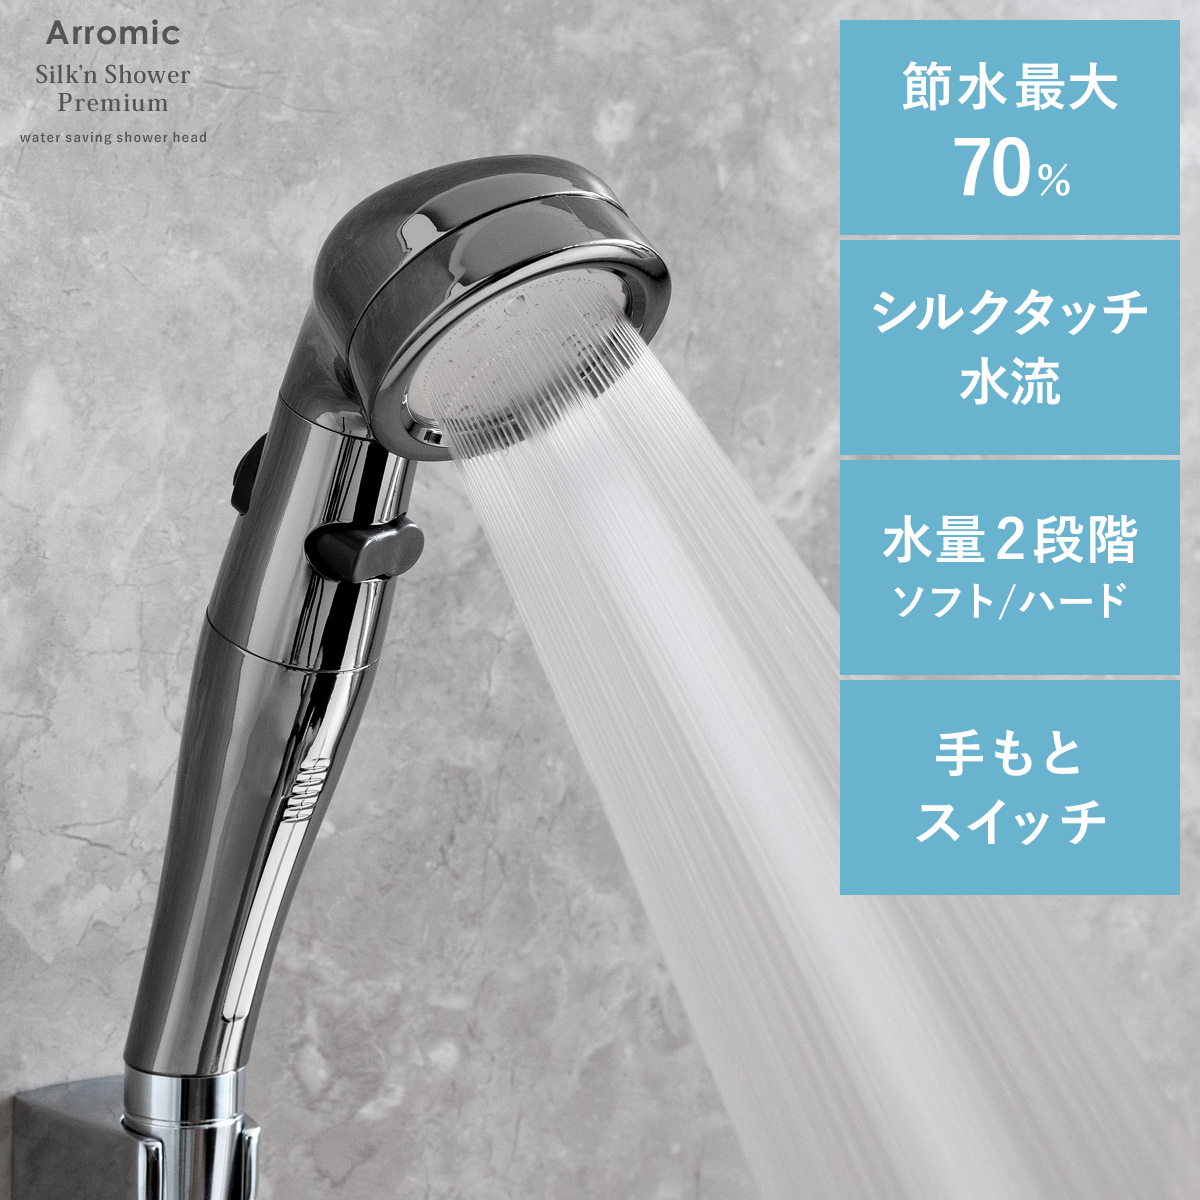 アラミック Silk'n Shower Premium(シルキンシャワー・プレミアム) | 【公式】 エア・リゾーム インテリア・家具通販